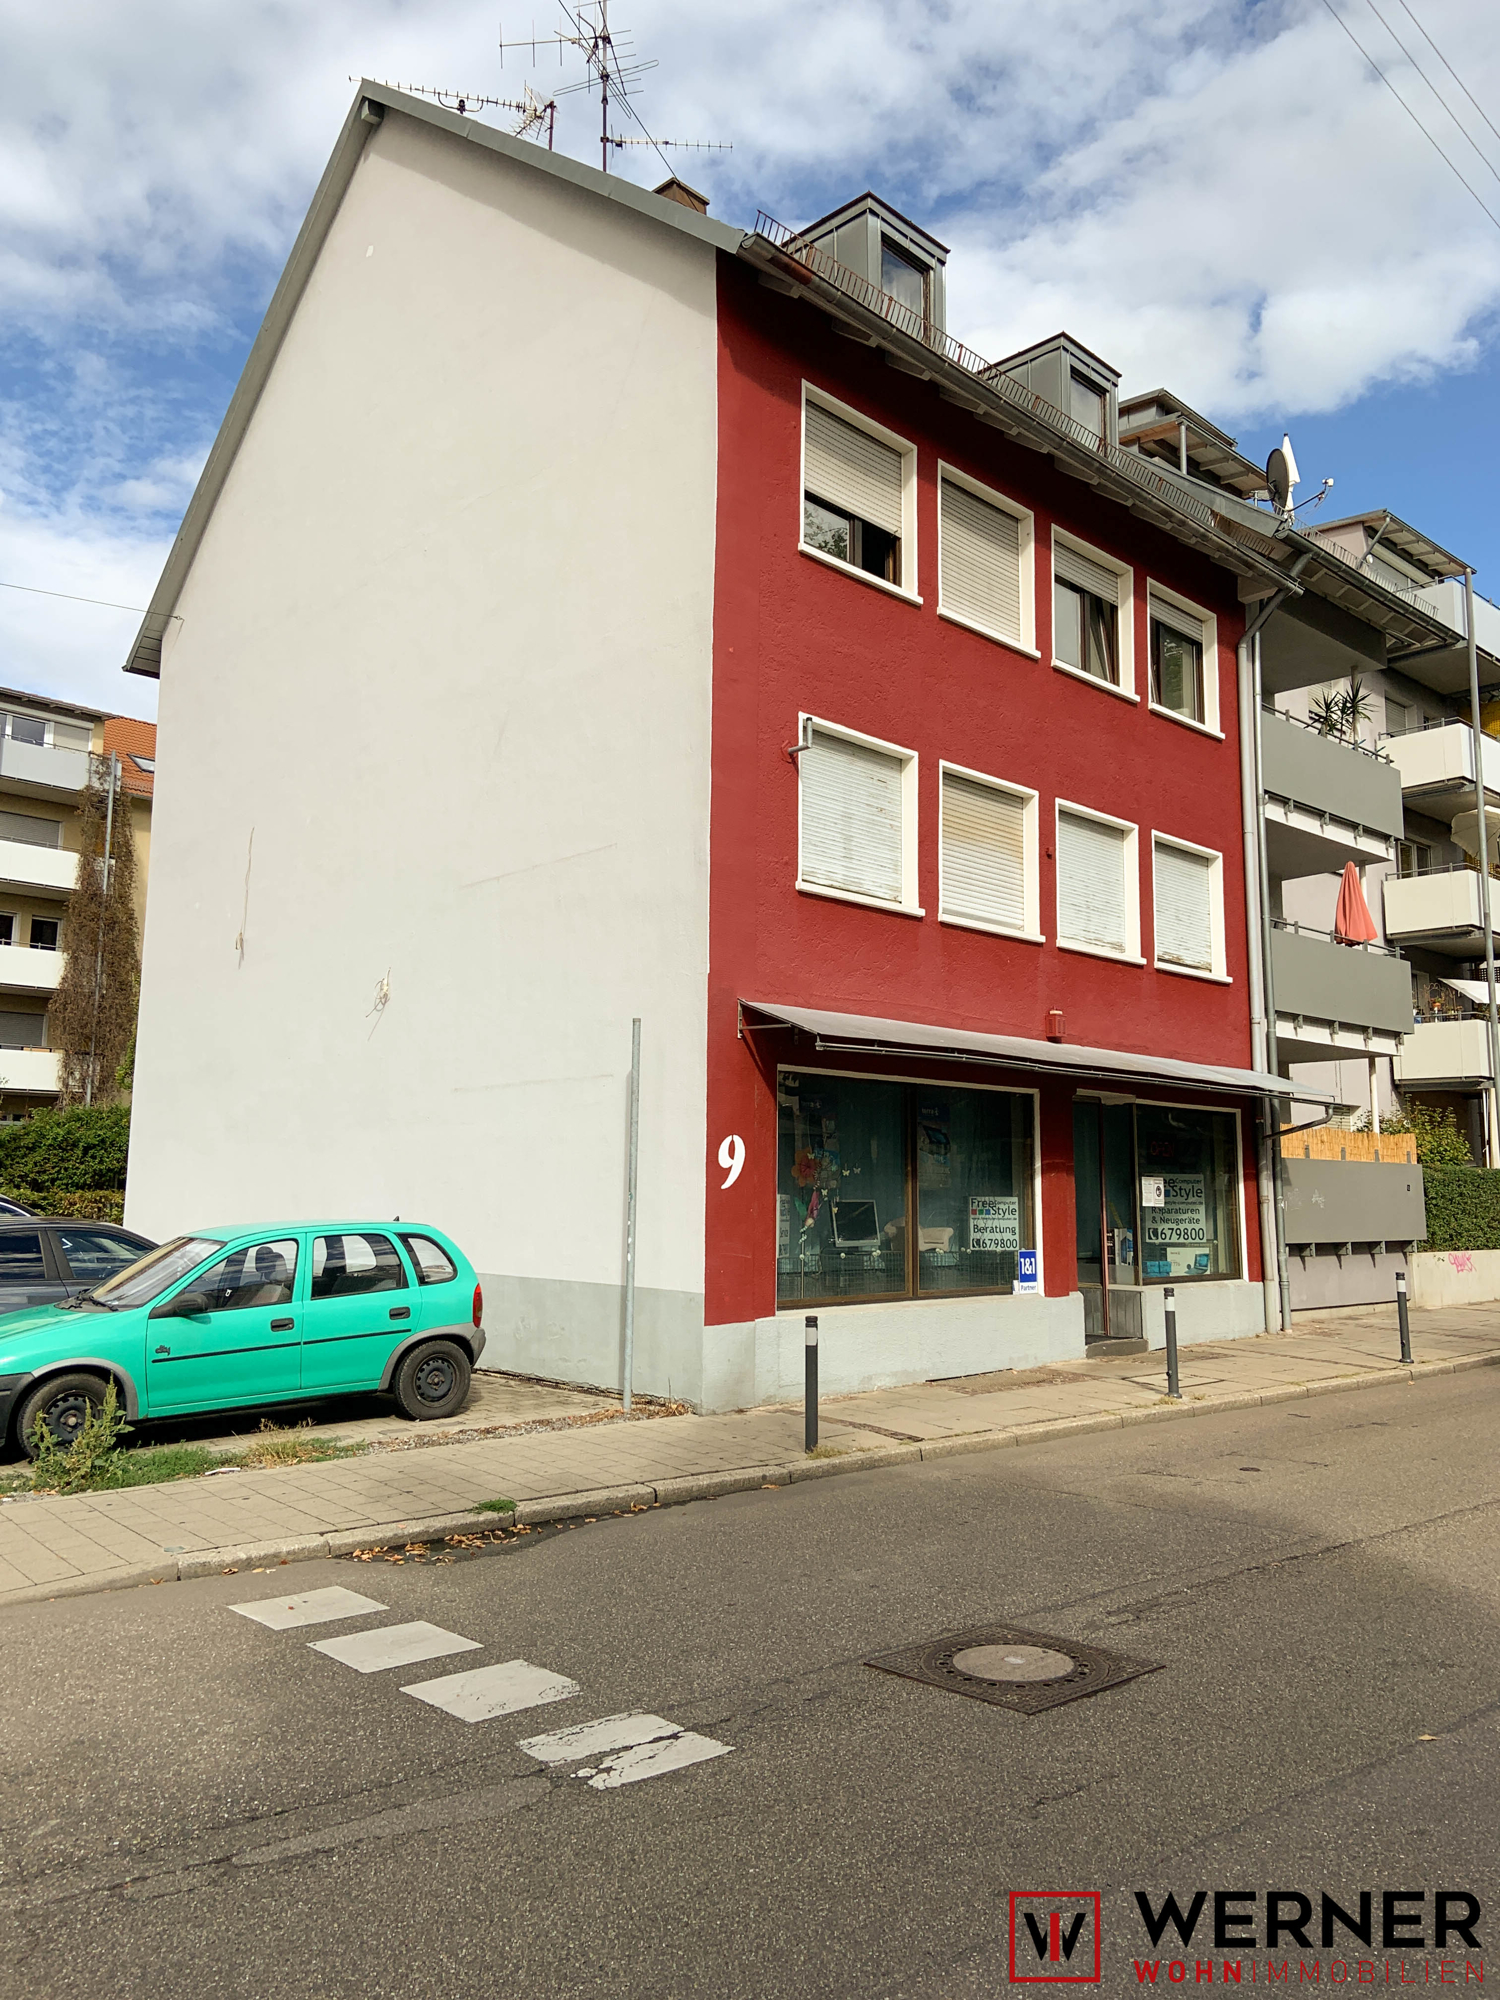 IMG_3272 - Immobilienmakler in Heilbronn